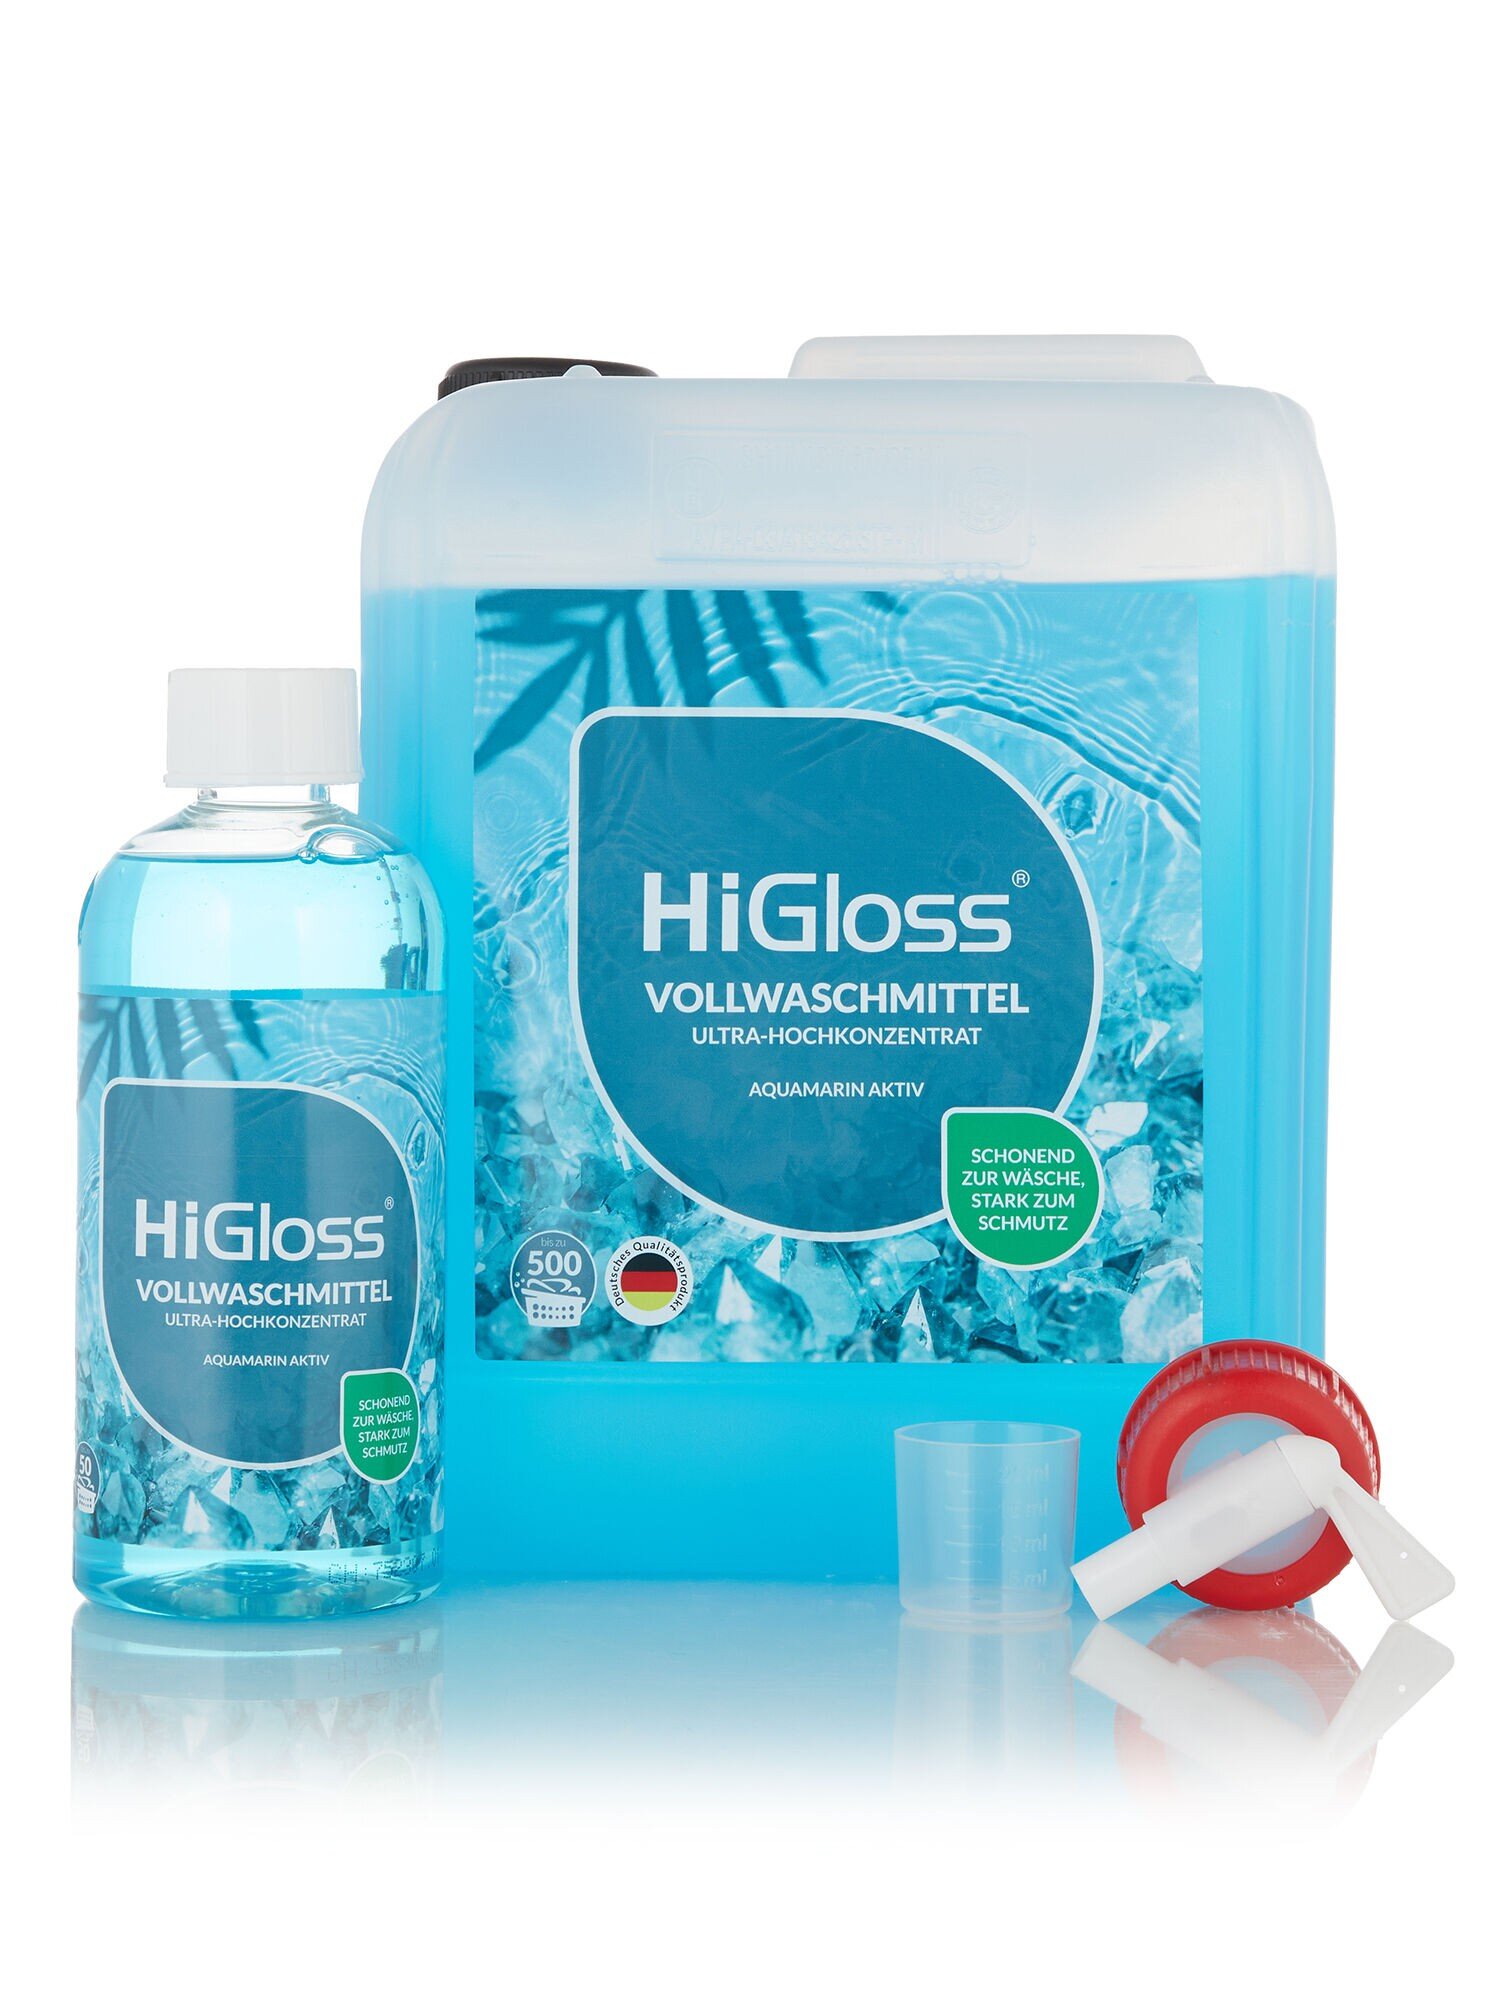 Reinigungsprodukte von HiGloss jetzt online kaufen | CHANNEL21